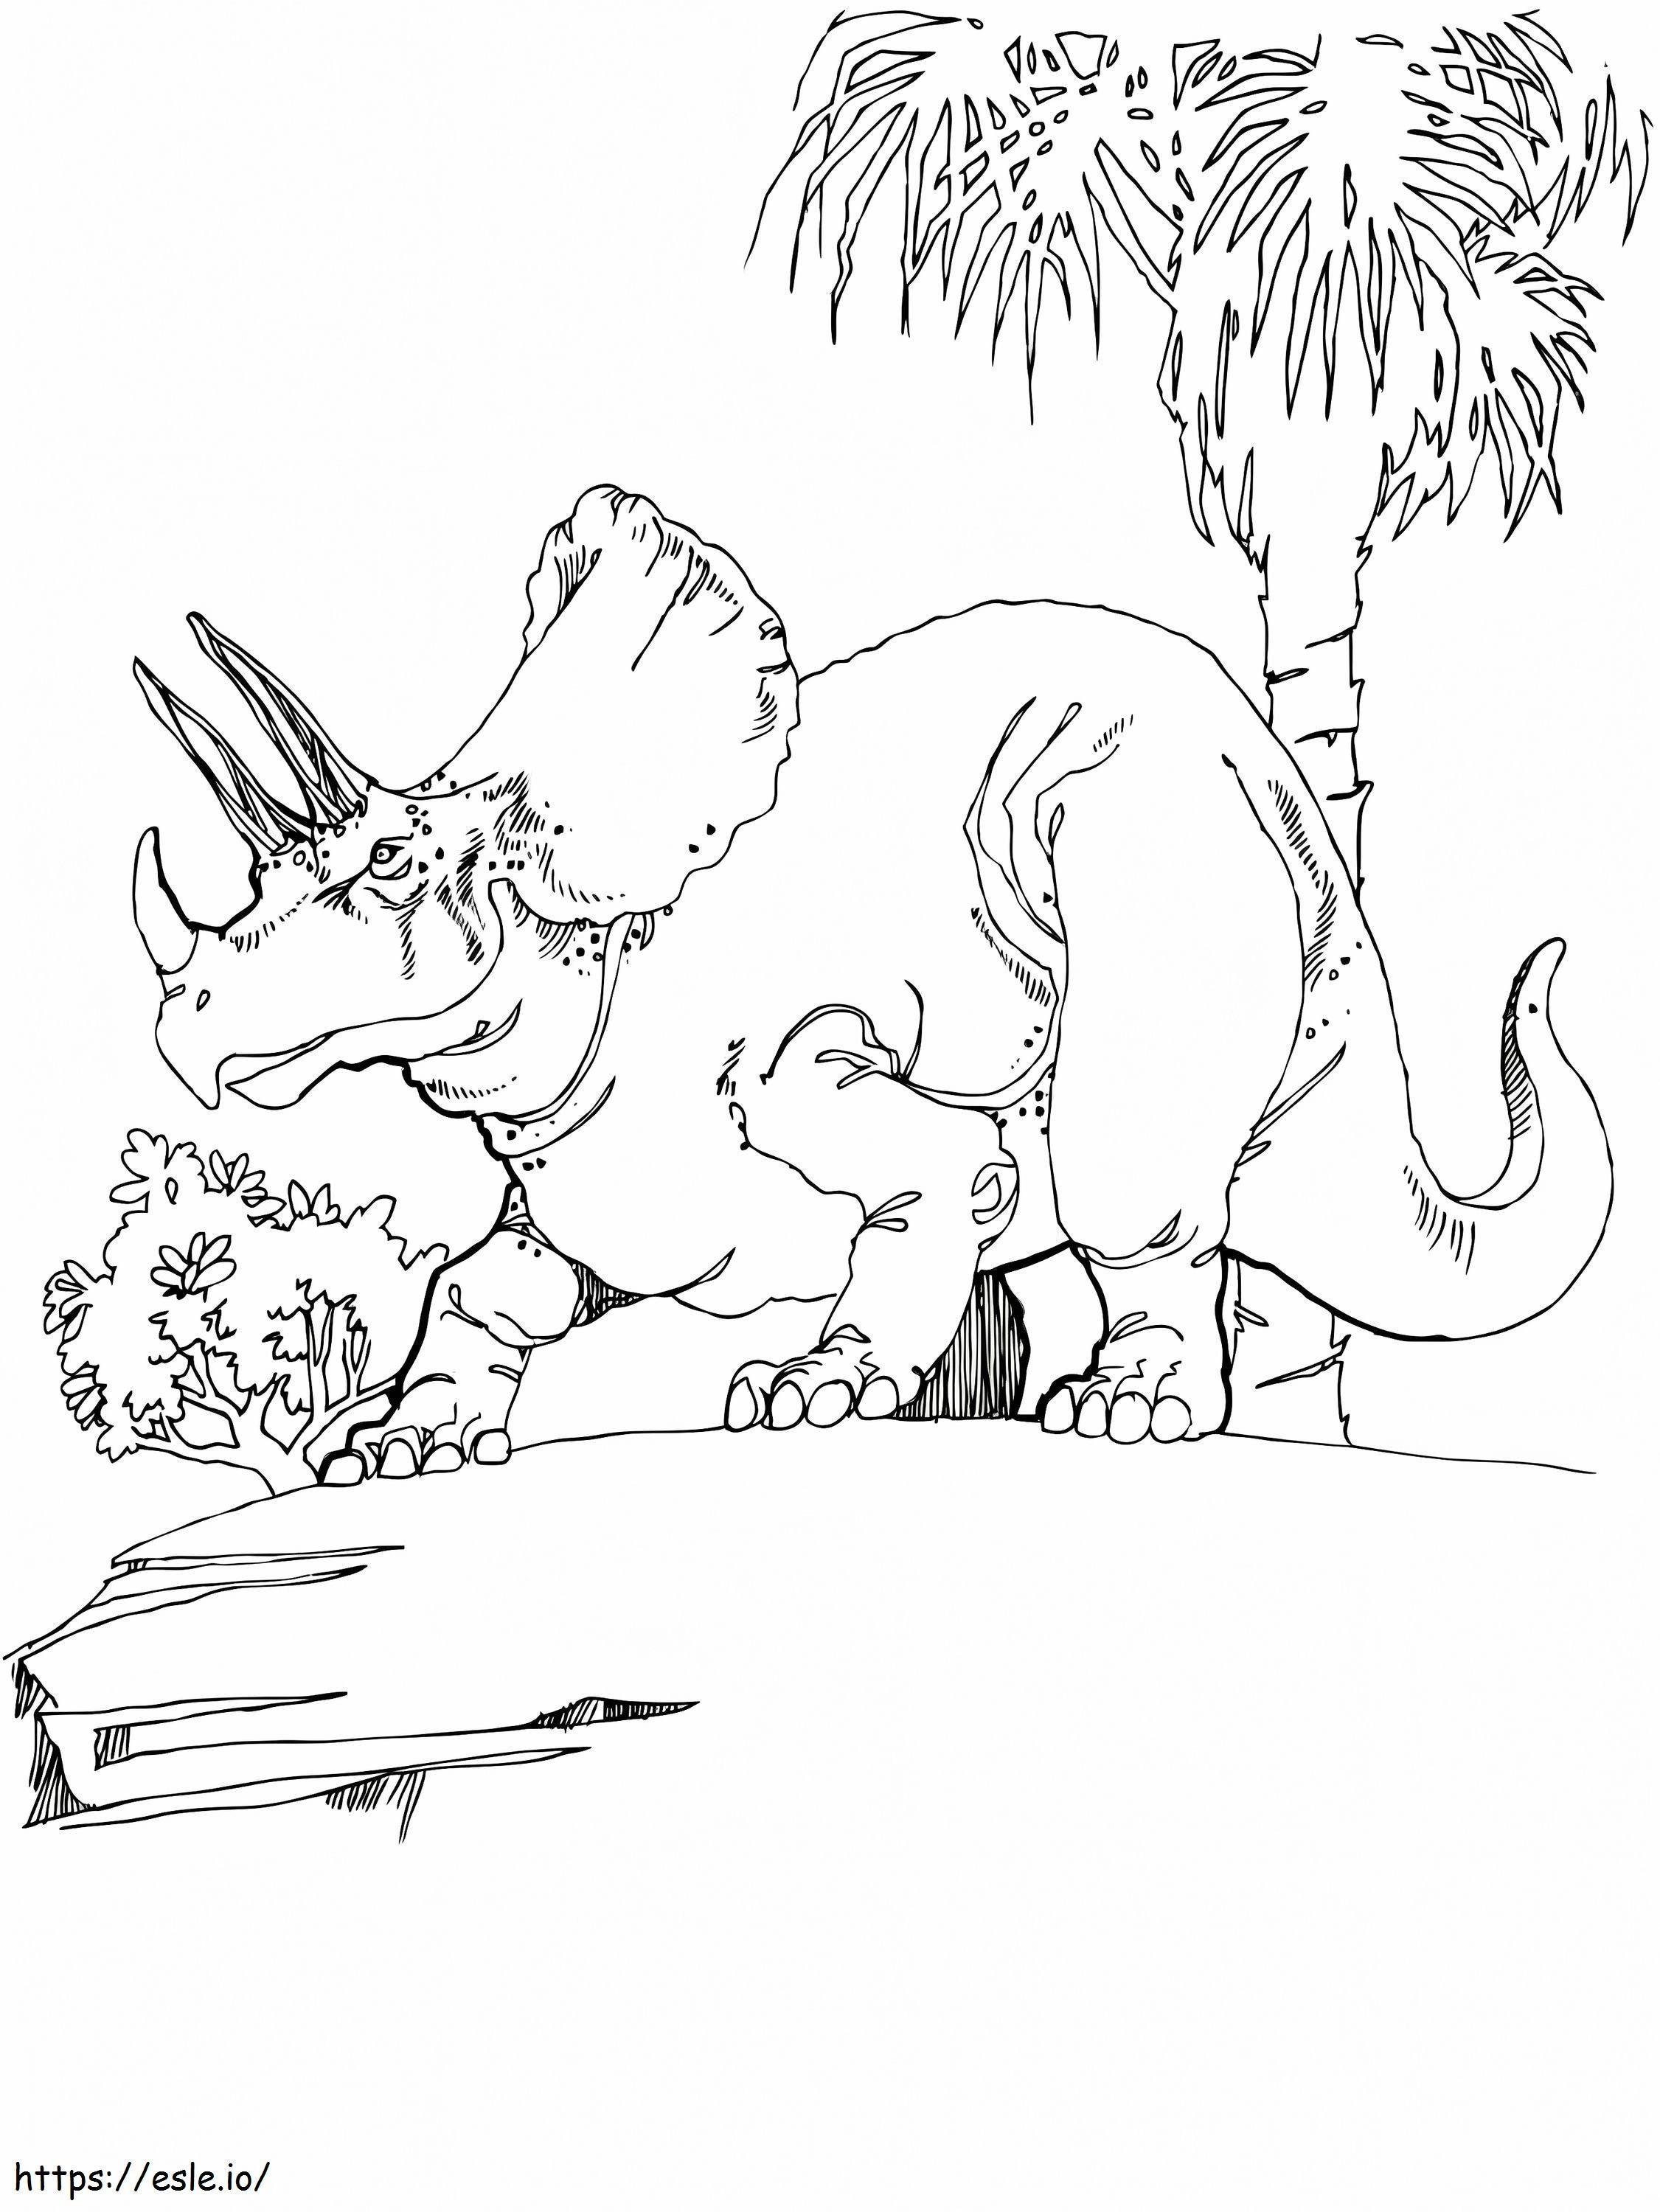 Triceratops Boyama Sayfası 5 boyama